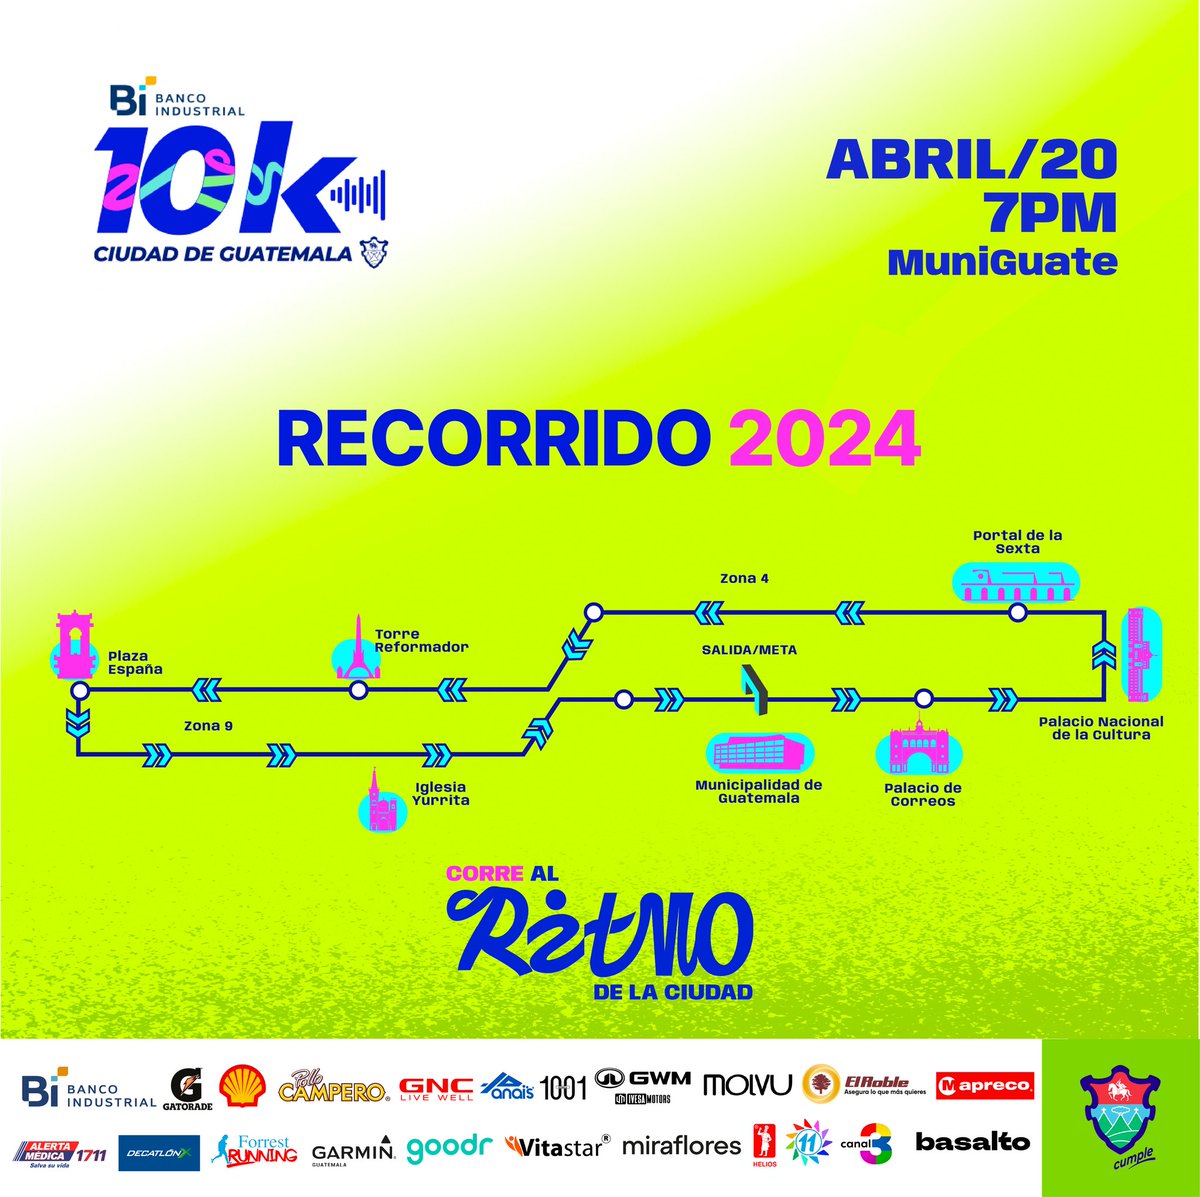 Acompáñanos en el recorrido de la #10KMuniGuate, disfruta de esta carrera y las demás actividades que hemos preparado para ti.🏃🏻‍♀️🏃🏻
Te esperamos este 20 de abril de 2024, a las 19:00 horas 🏁🏅
#Expo10K #AfterRun #UnaCiudadParaVivir